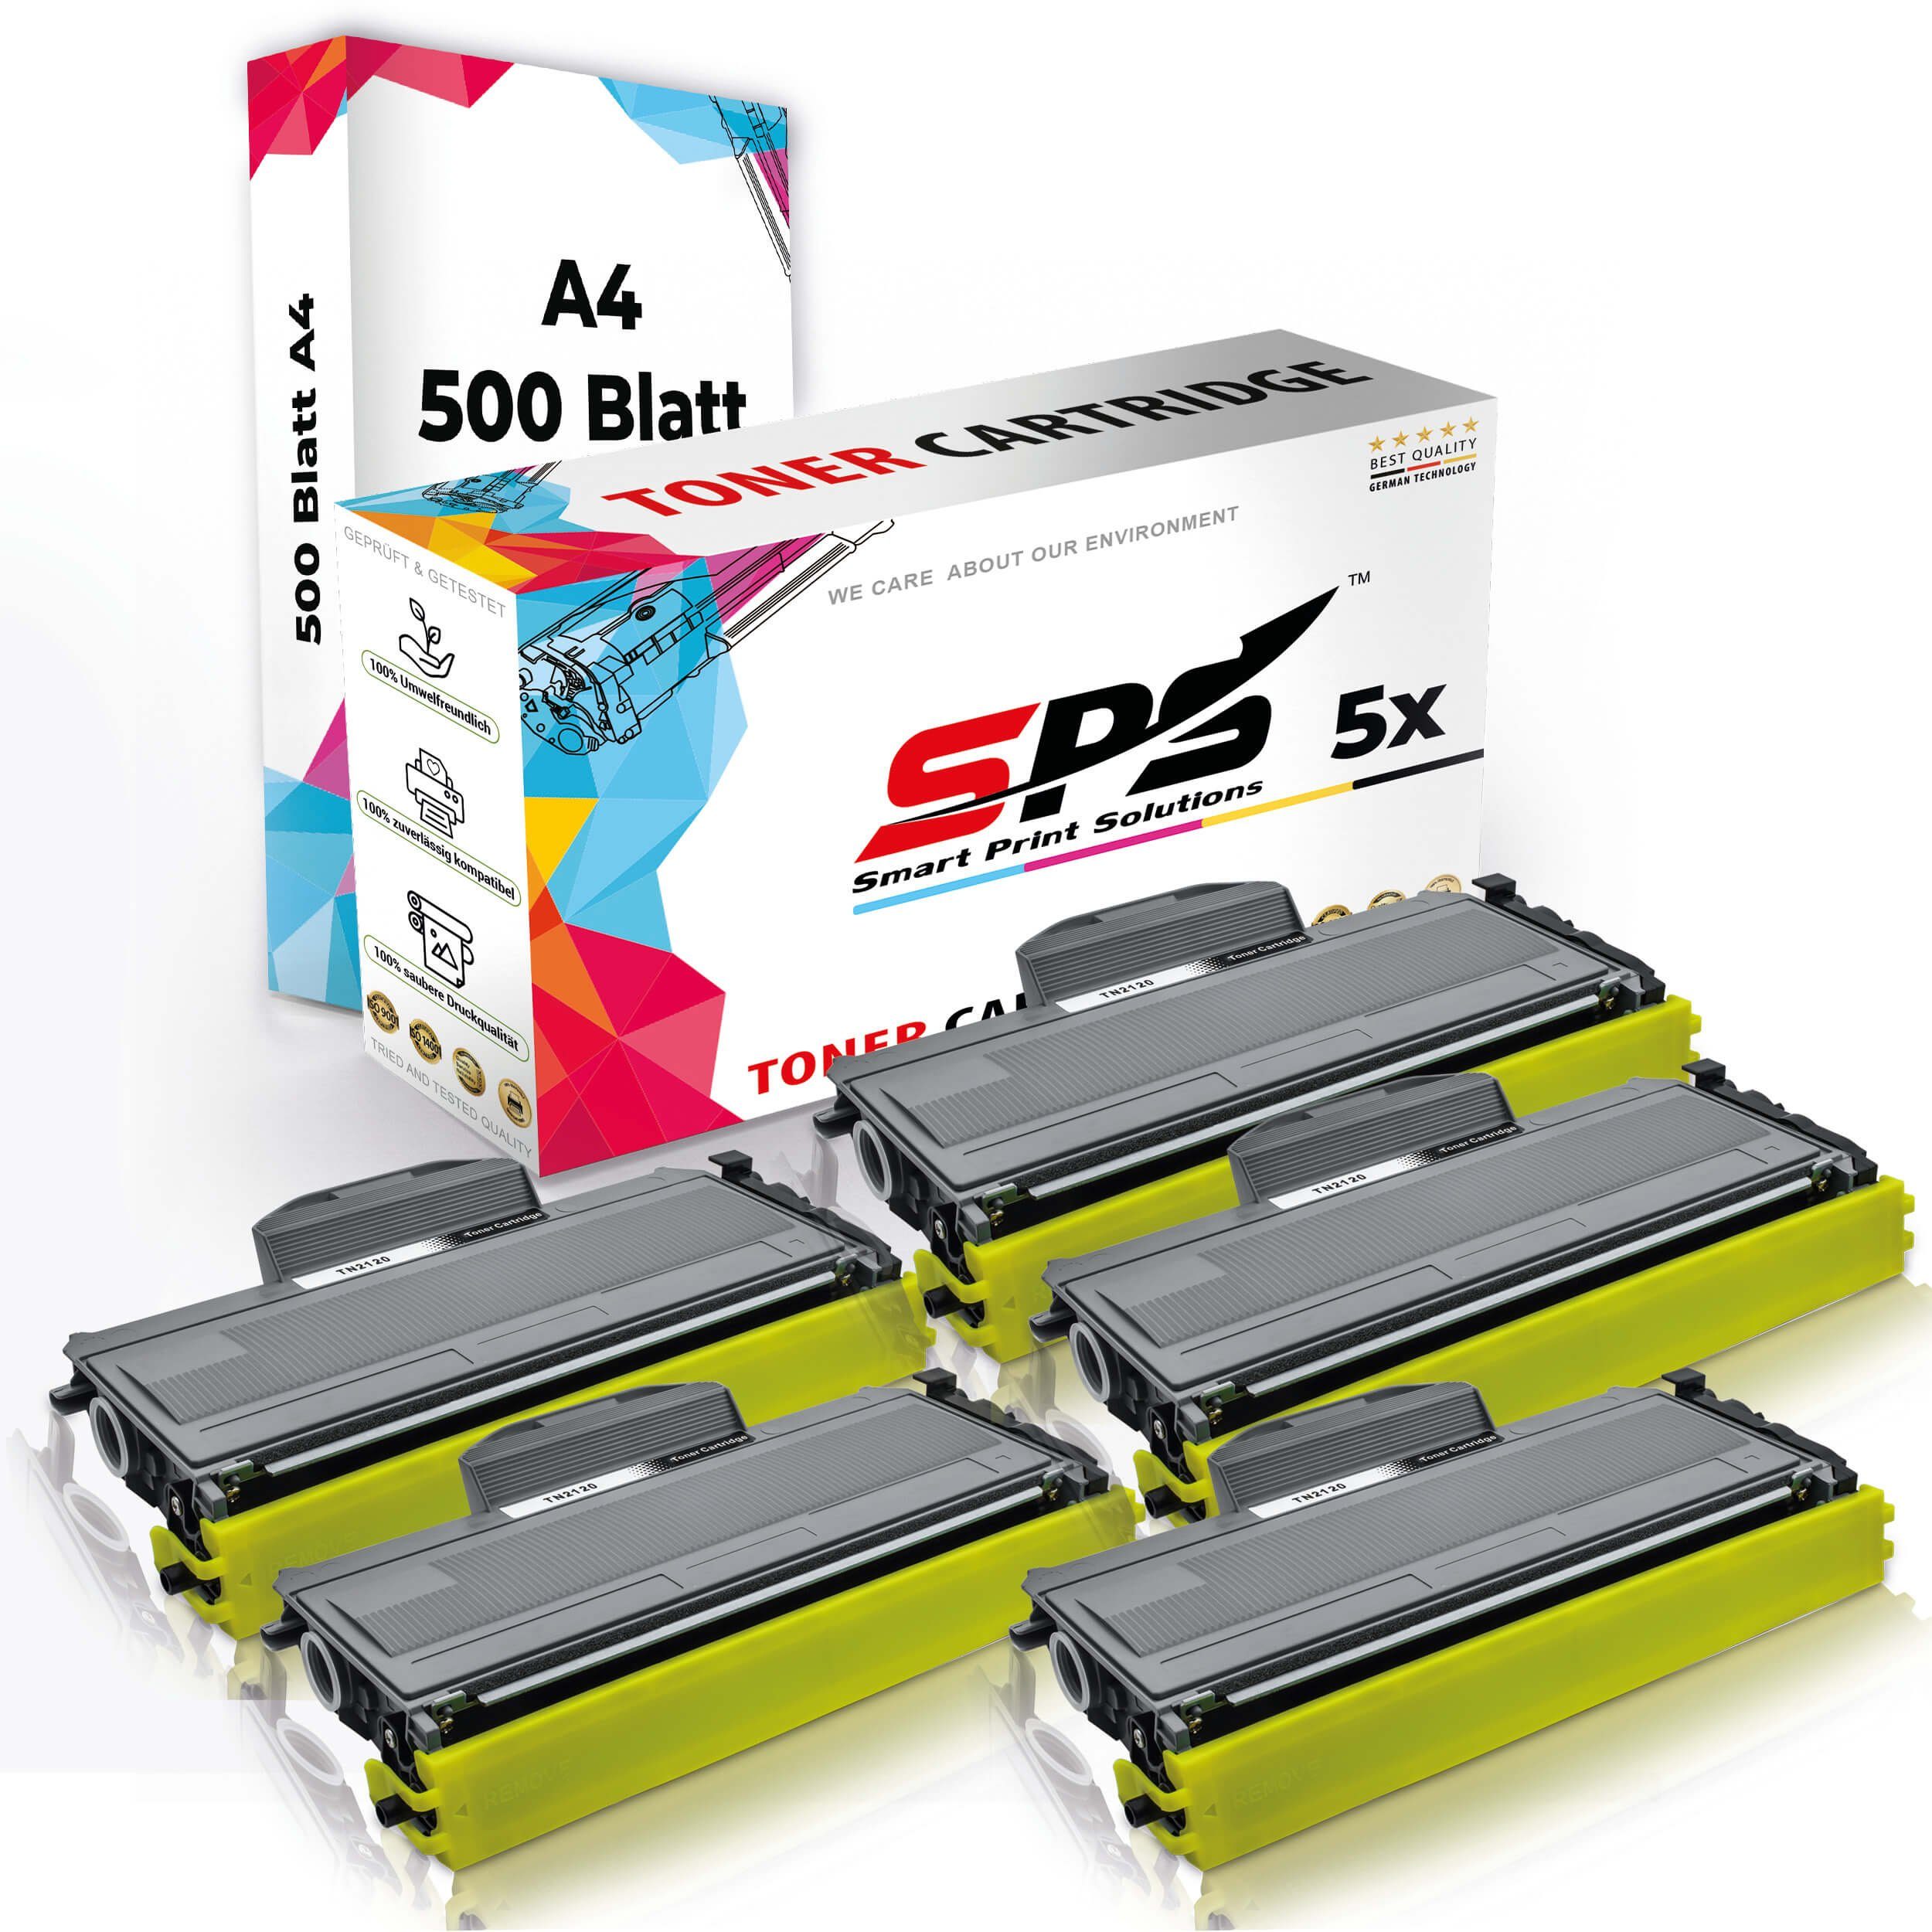 5x Multipack A4 SPS Toner,1x + A4 Druckerpapier) Druckerpapier Pack, Kompatibel, Tonerkartusche (5er 5x Set